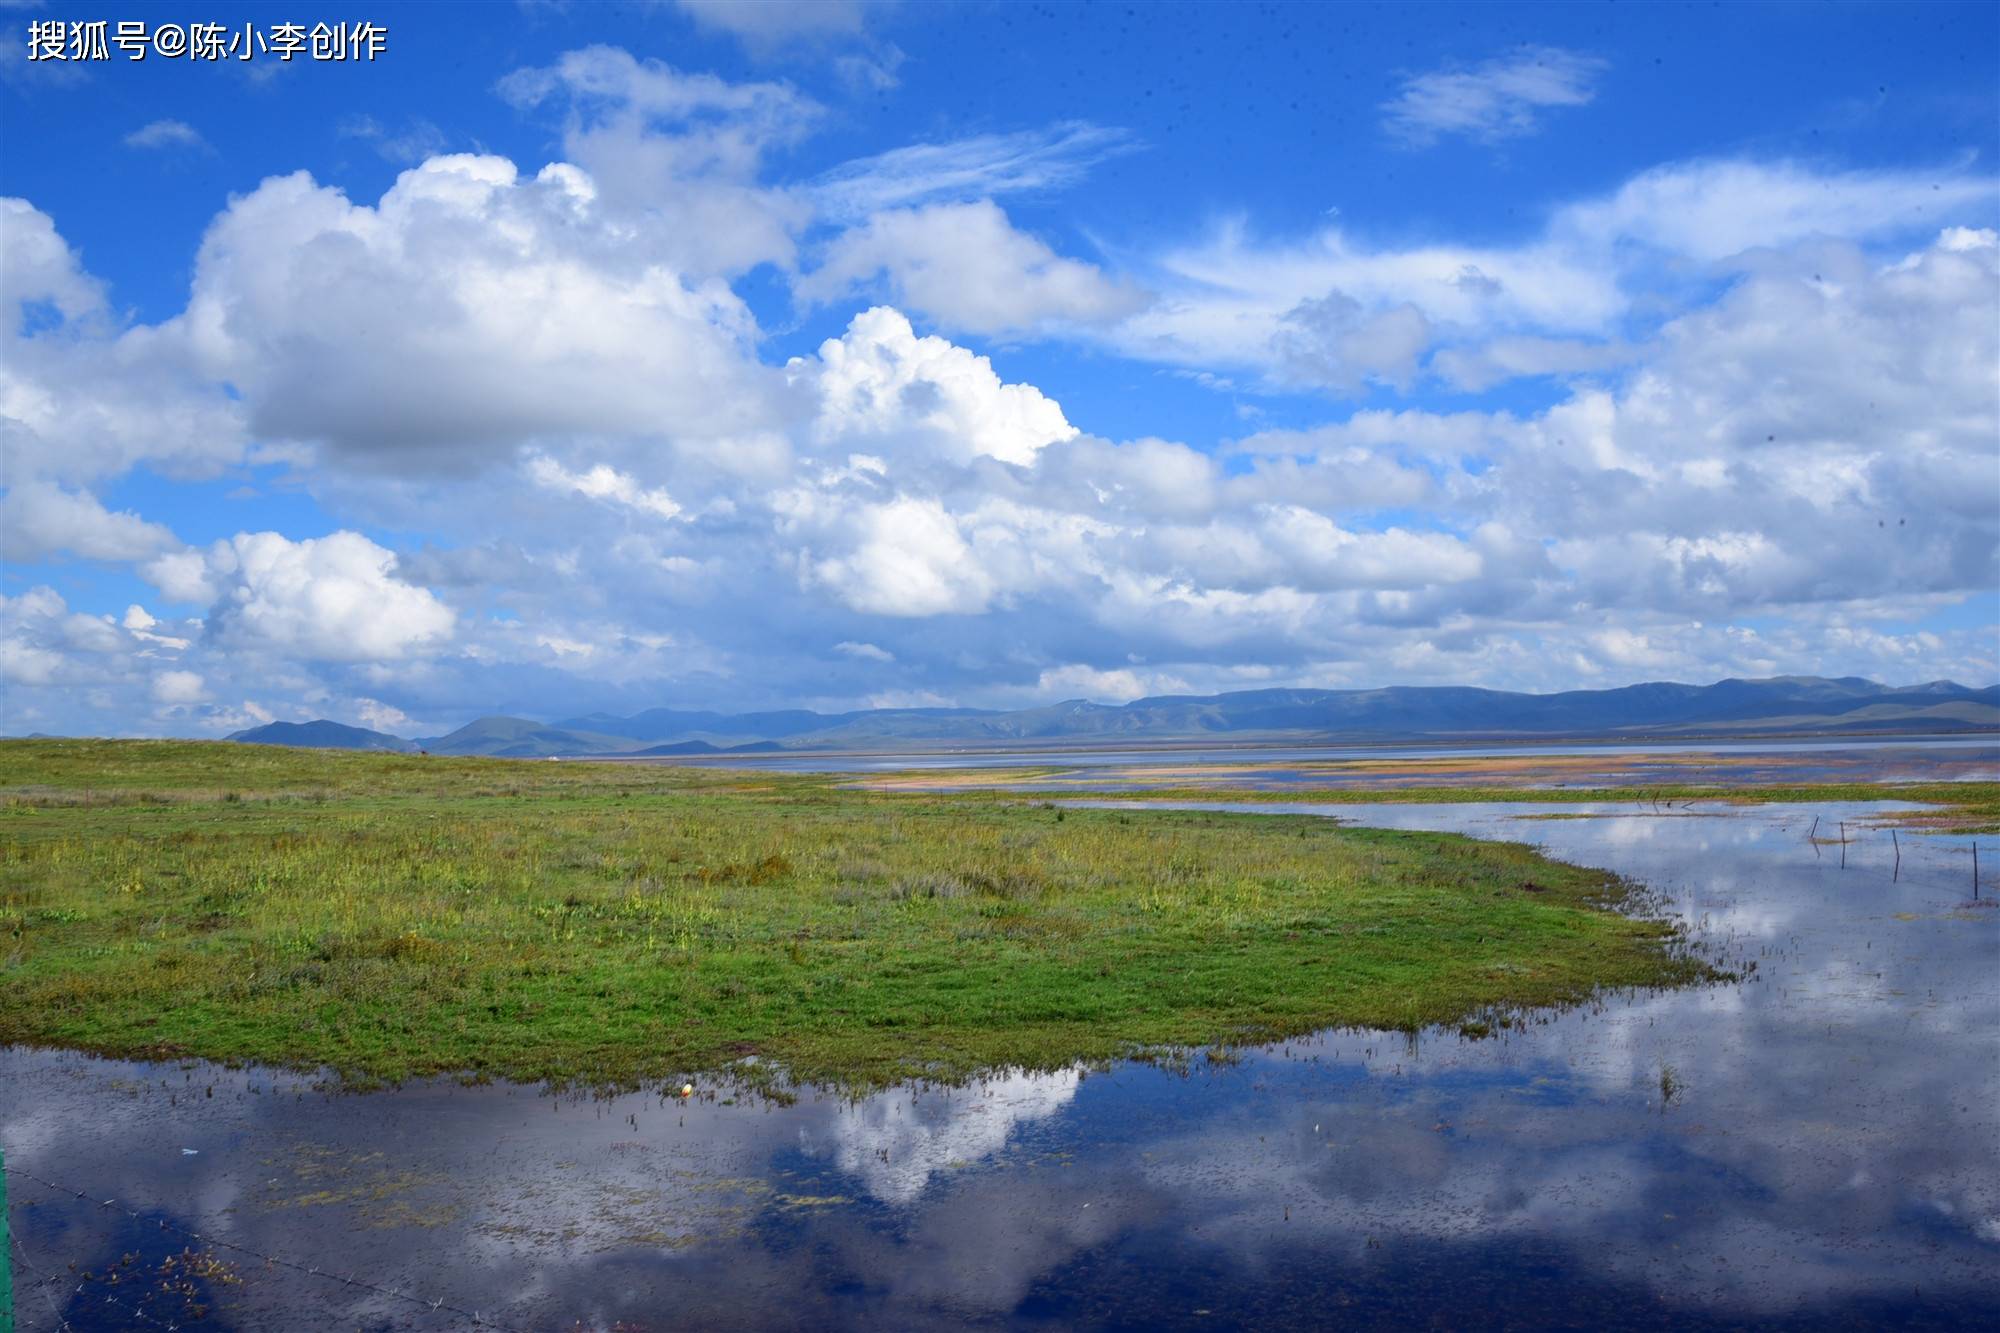 青海尕海湖:鹤舞高原,百鸟翔集,烟波浩渺,水天一色,美呆了!